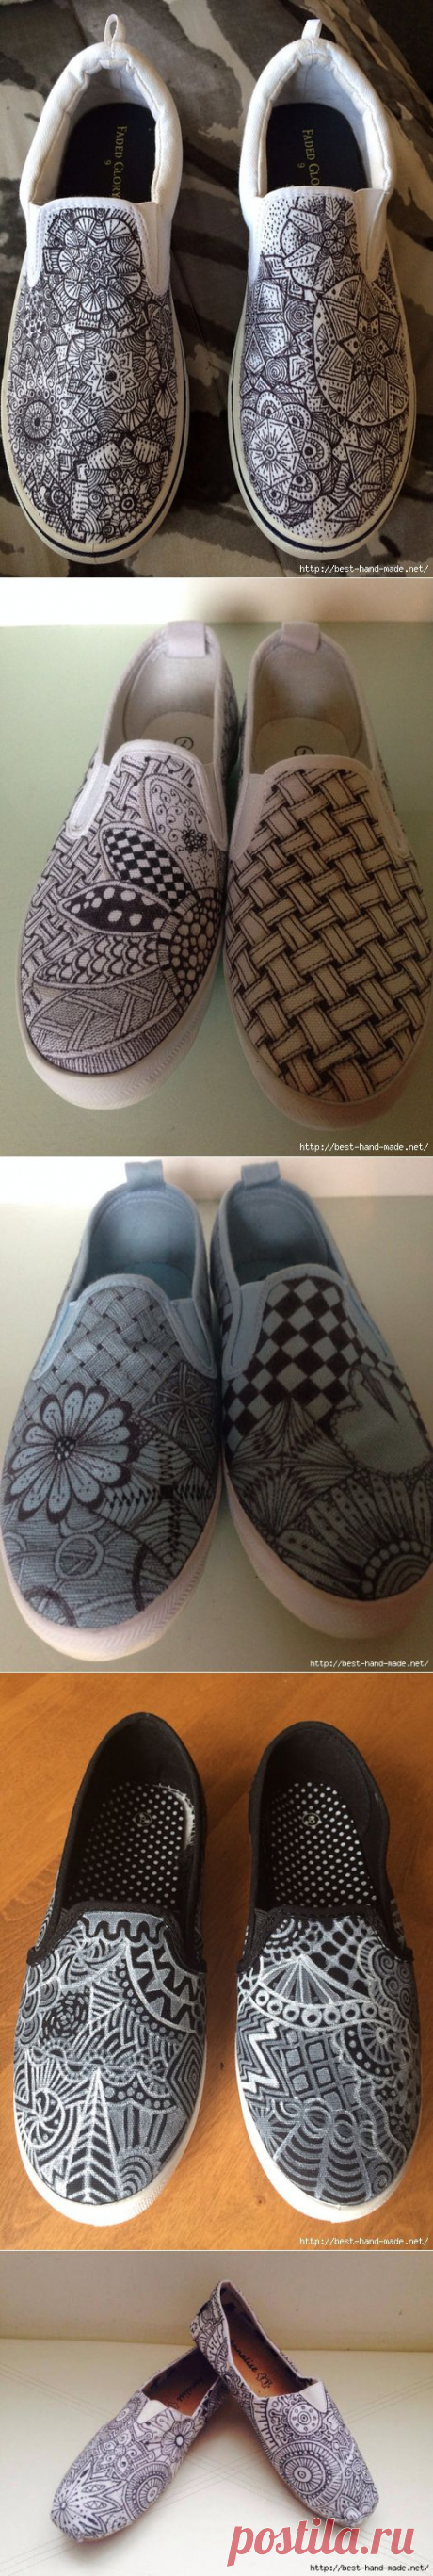 Оригинальная роспись обуви в технике дудлинг